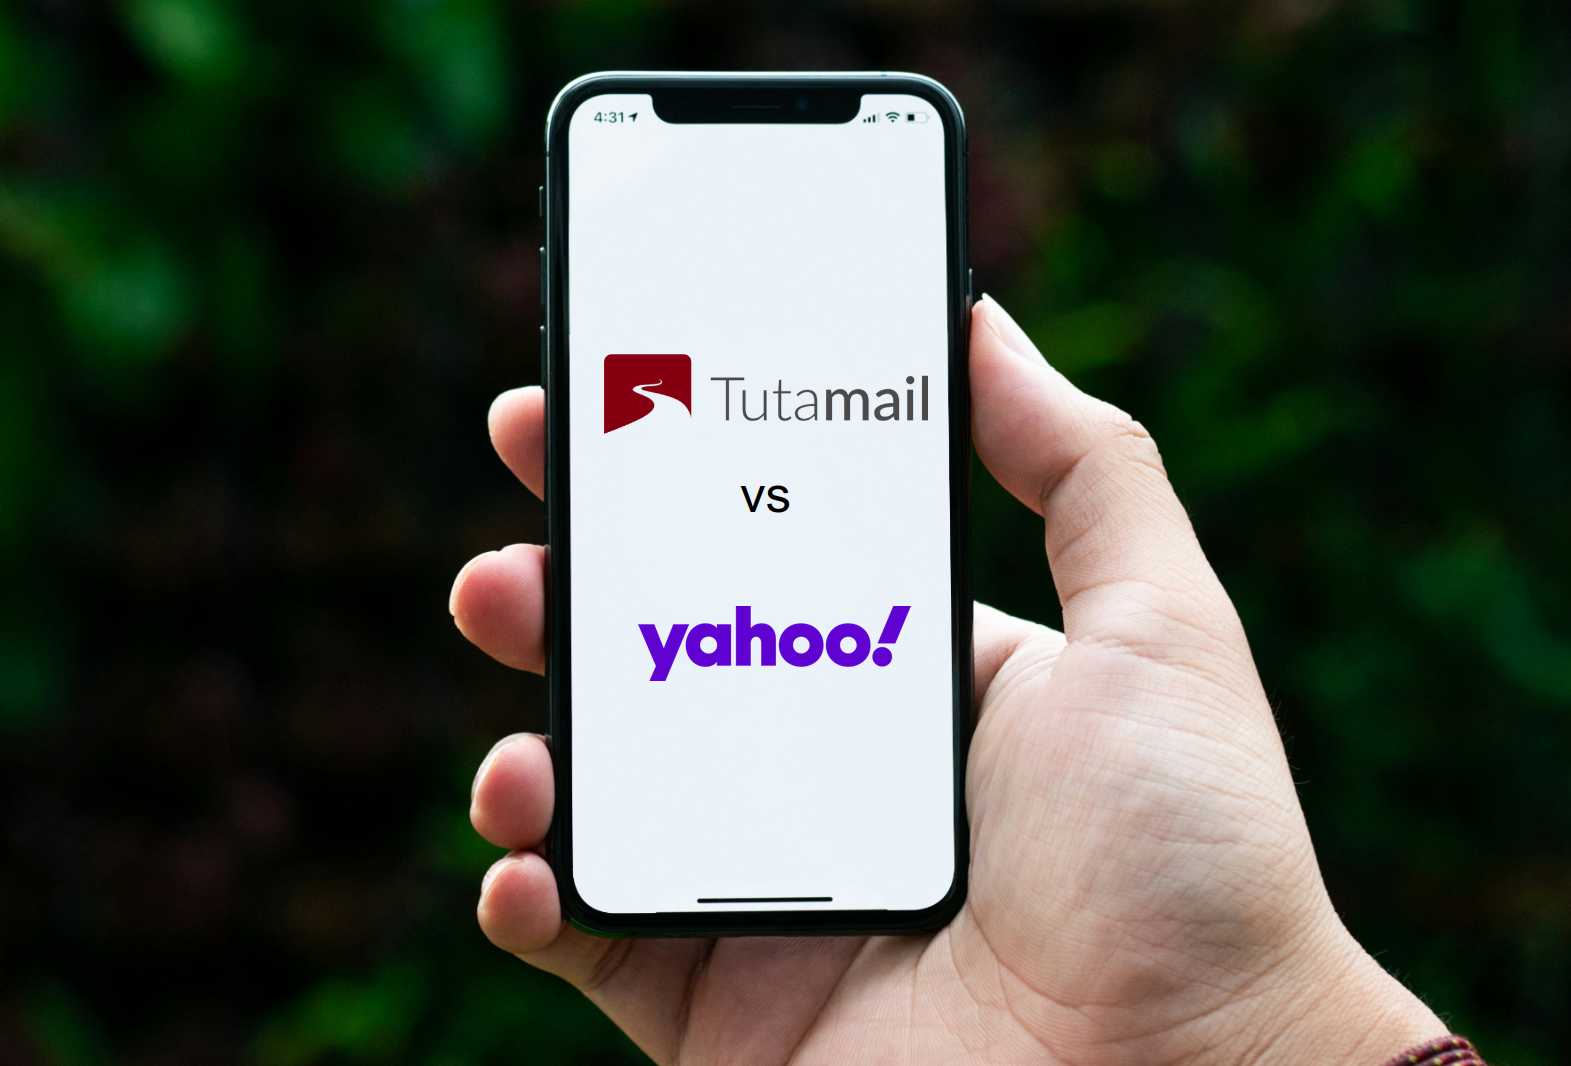 Welches ist die beste Yahoo-Alternative? Vergleichen wir Yahoo vs Tuta Mail.